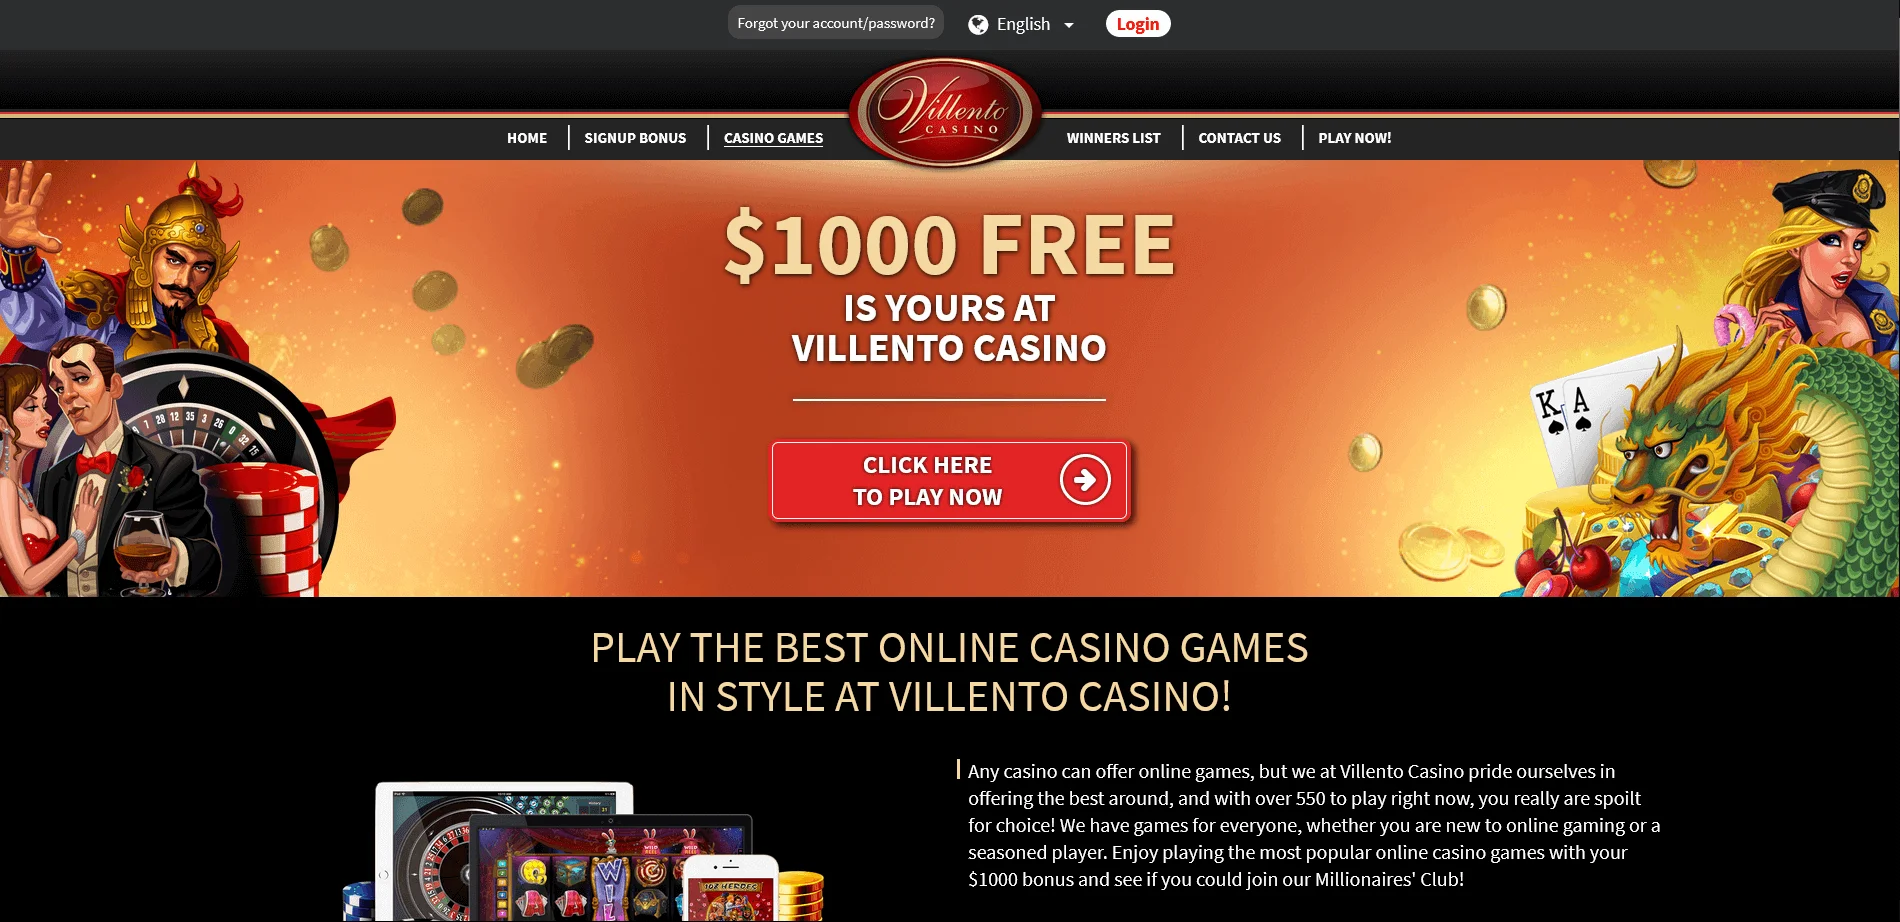 Διαθέσιμες μεθόδοι κατάθεσης και ανάληψης στο Villento Casino